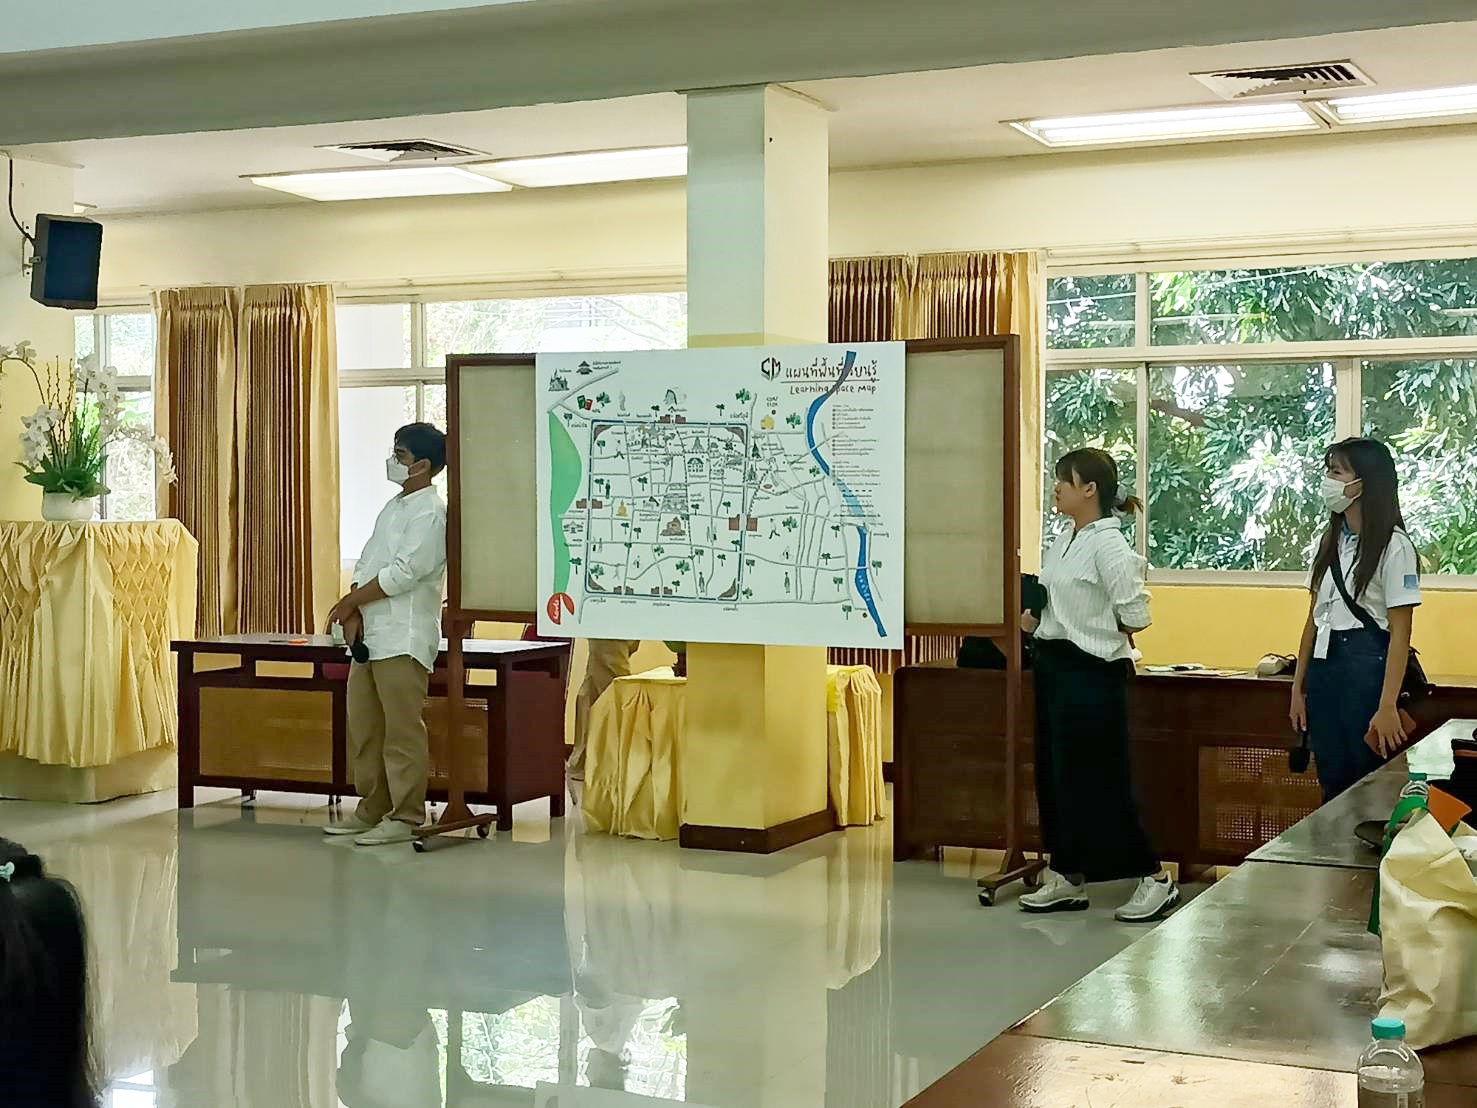 คณะผู้เข้าร่วมกิจกรรม  แอ่วเวียน เฮียนฮู้เวียง  โครงการ Chiang Mai Learning City เข้าเยี่ยมชมหอสมุดแห่งชาติรัชมังคลาภิเษก เชียงใหม่